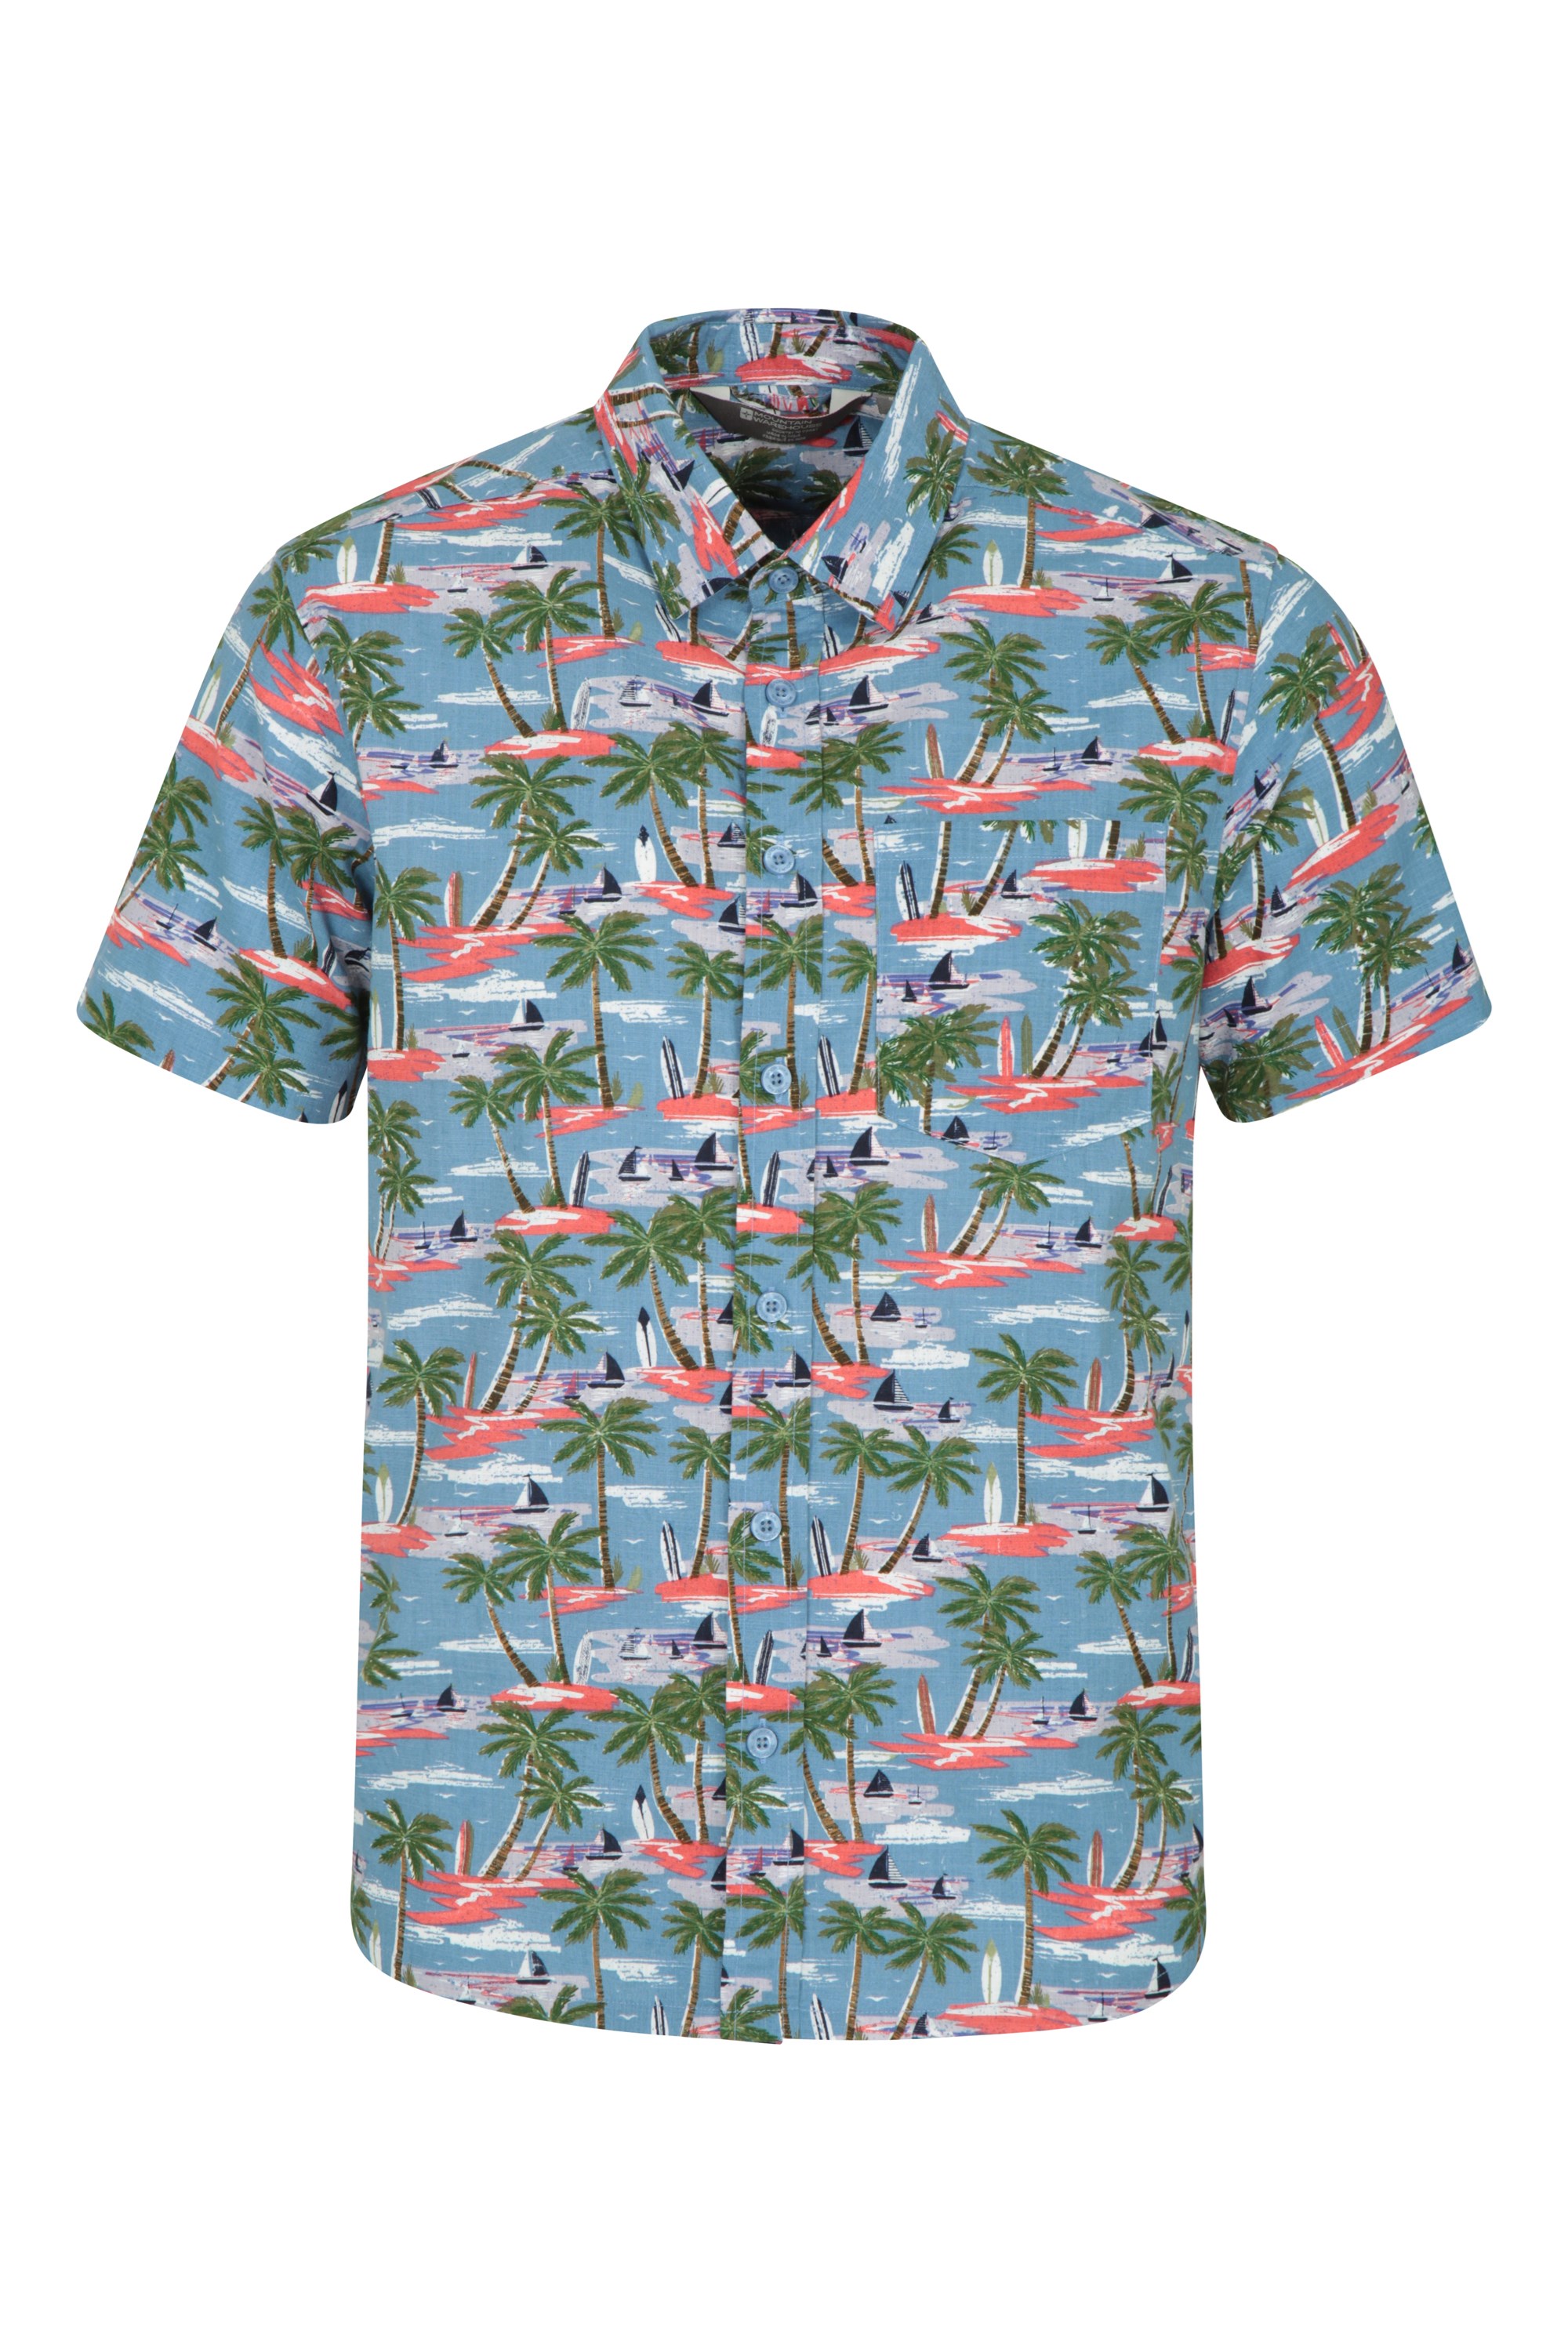 Summer Mens Short Sleeve T-shirt Hawaii Shirts Cotton Linen Button